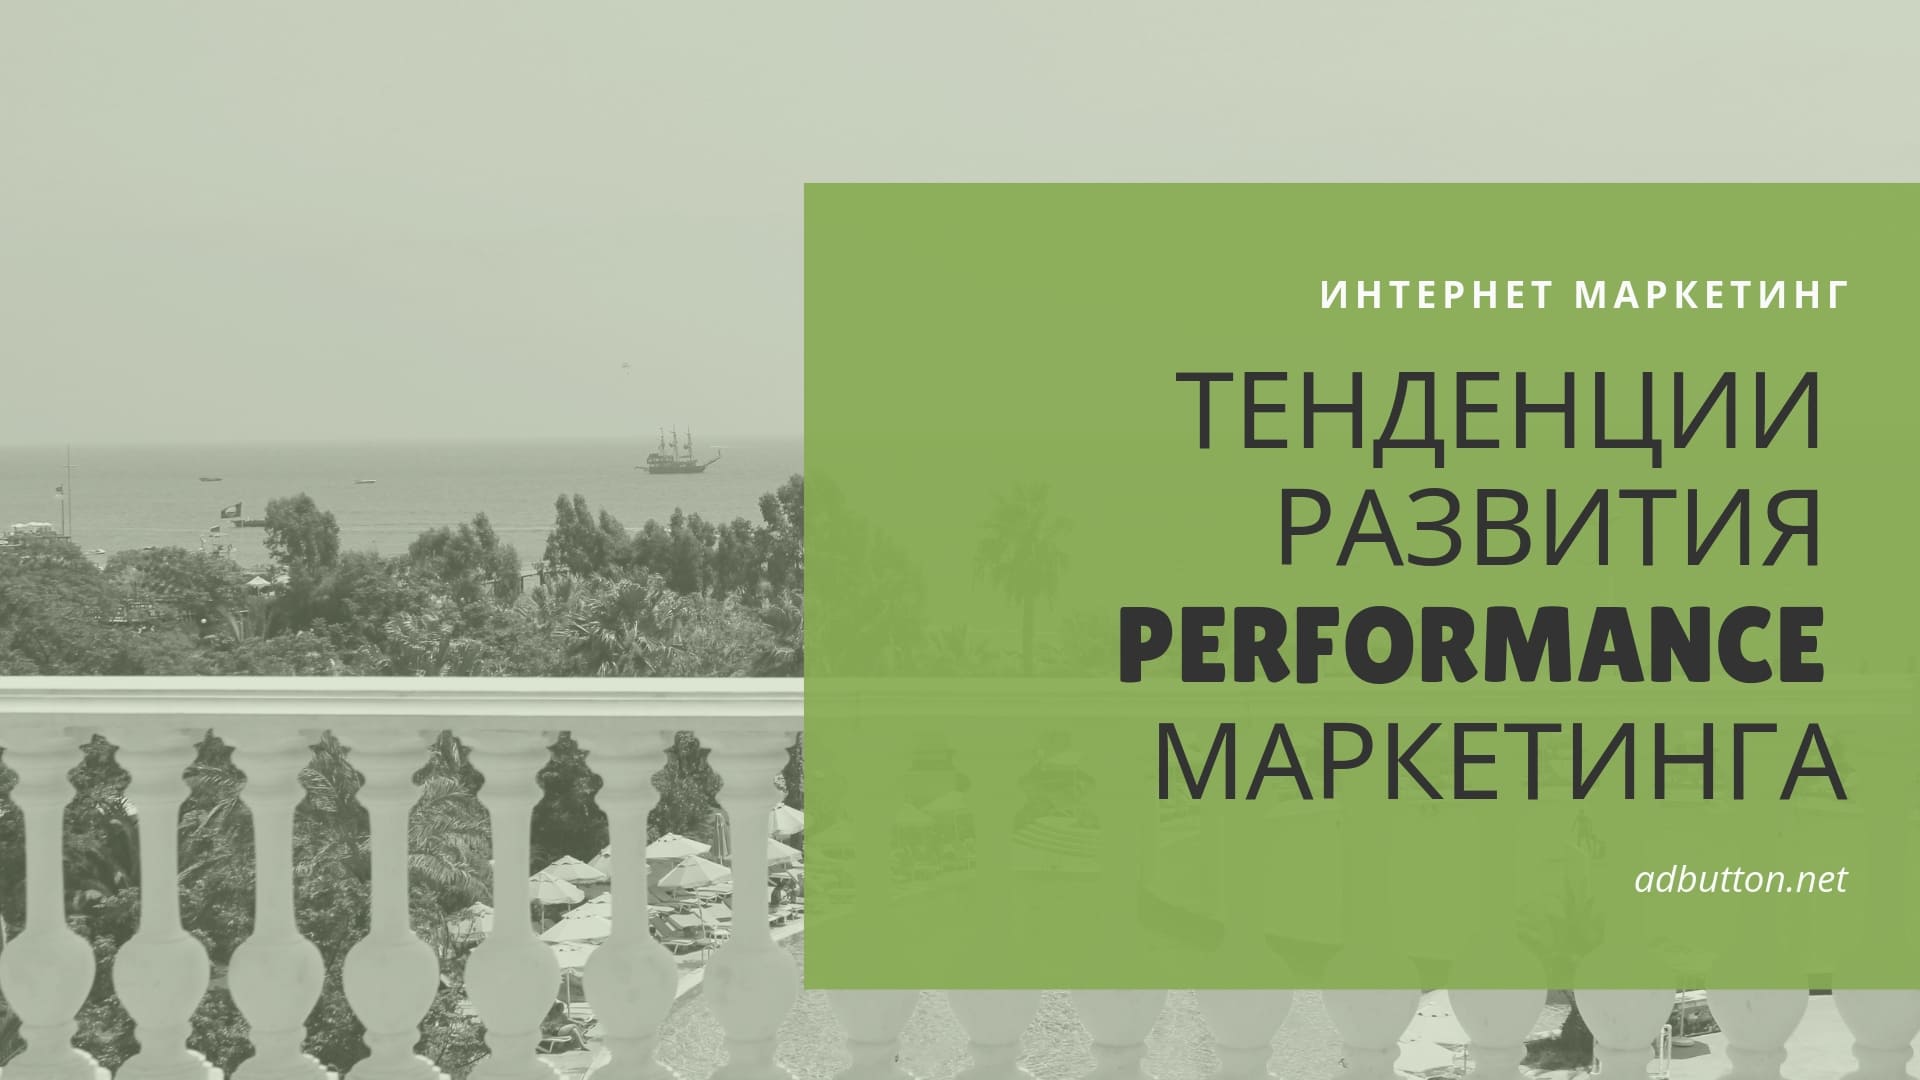 Performance маркетинг для бизнеса: прогноз развития, инструменты продвижения